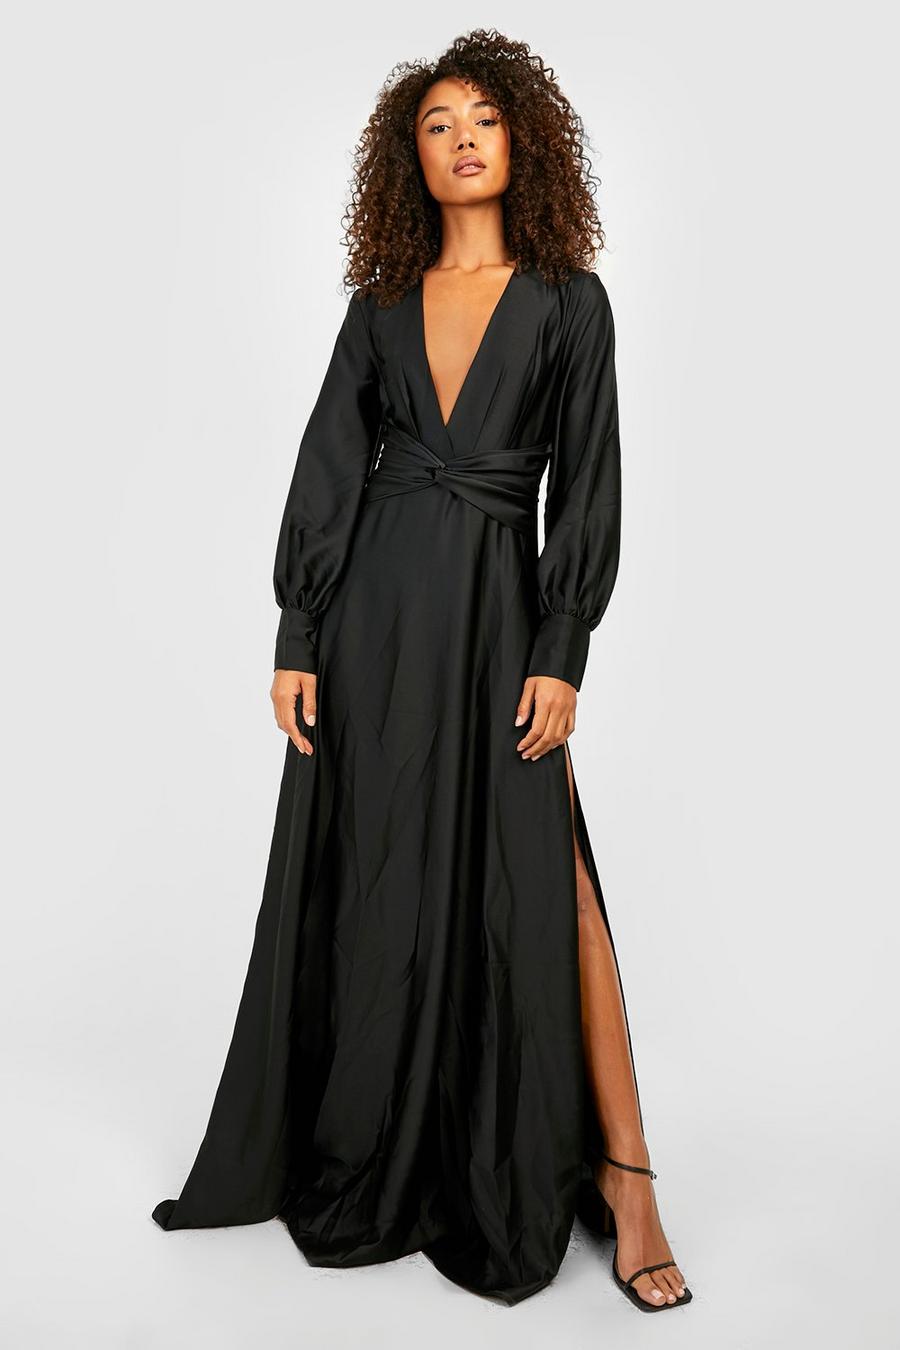 שחור שמלת מקסי מסאטן עם מחשוף ושרוולי בלון, לנשים גבוהות